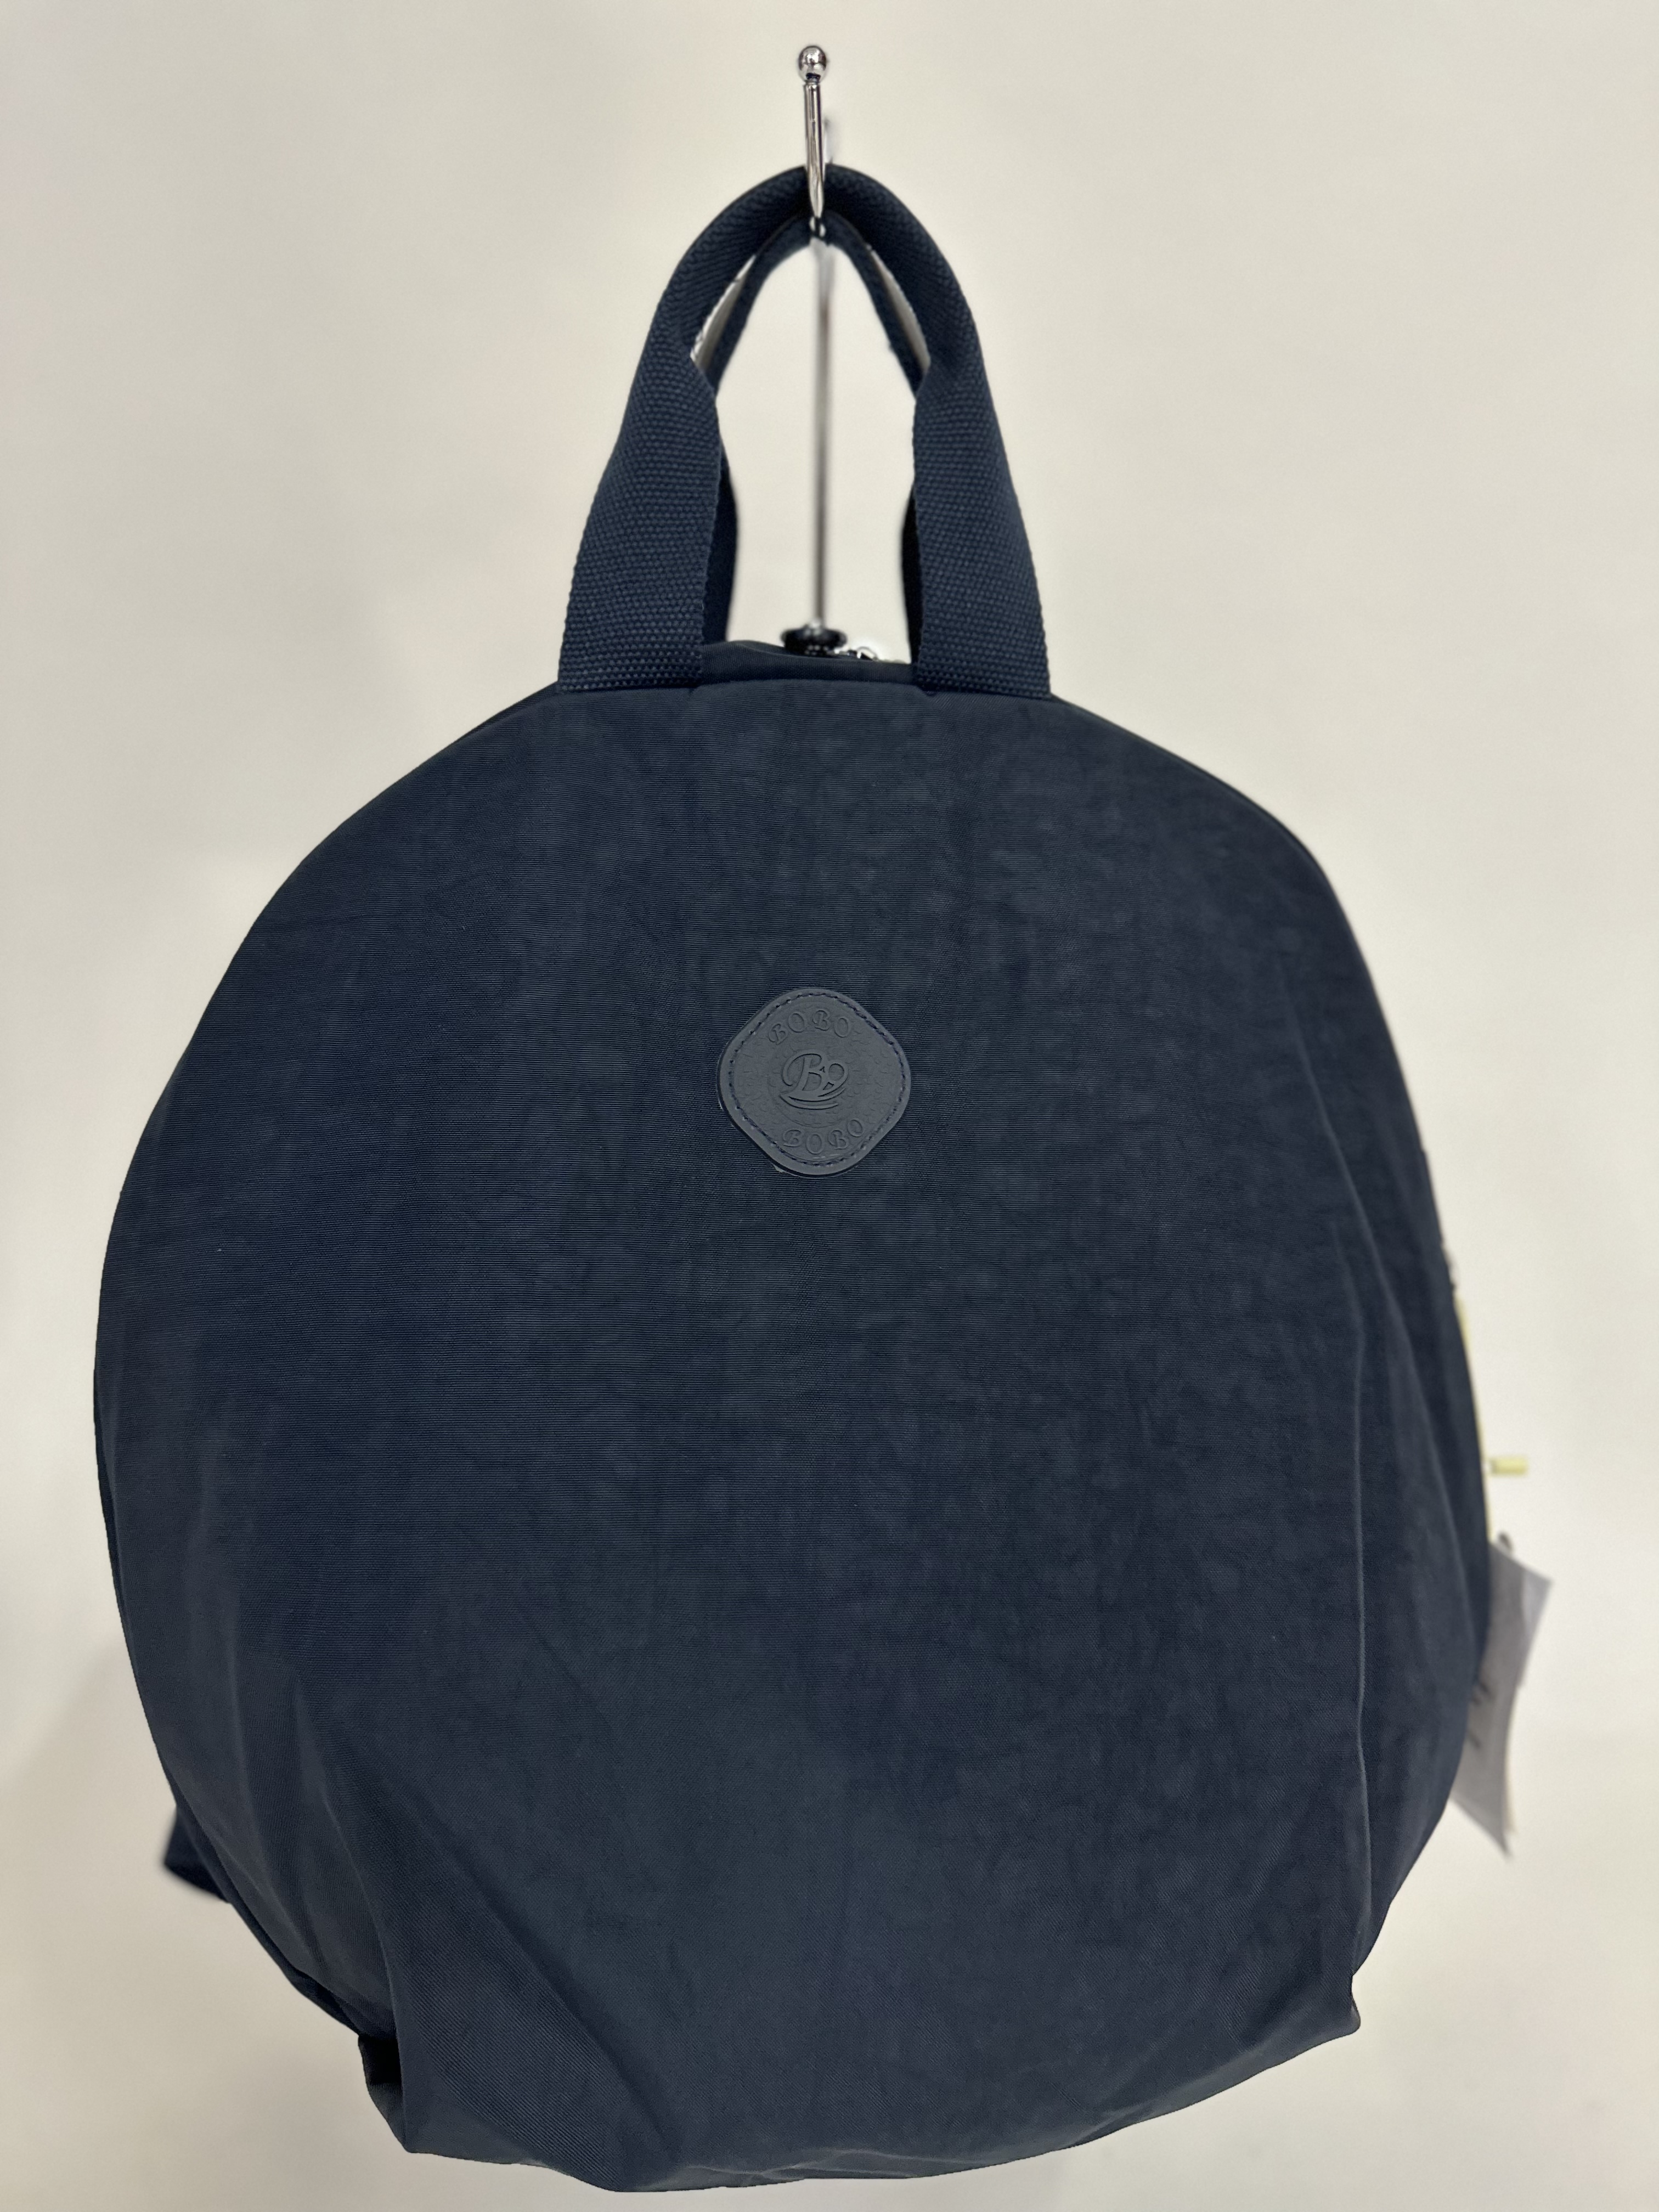 Рюкзак женский Bobo 1303 темно-синий, 47х3х37 см